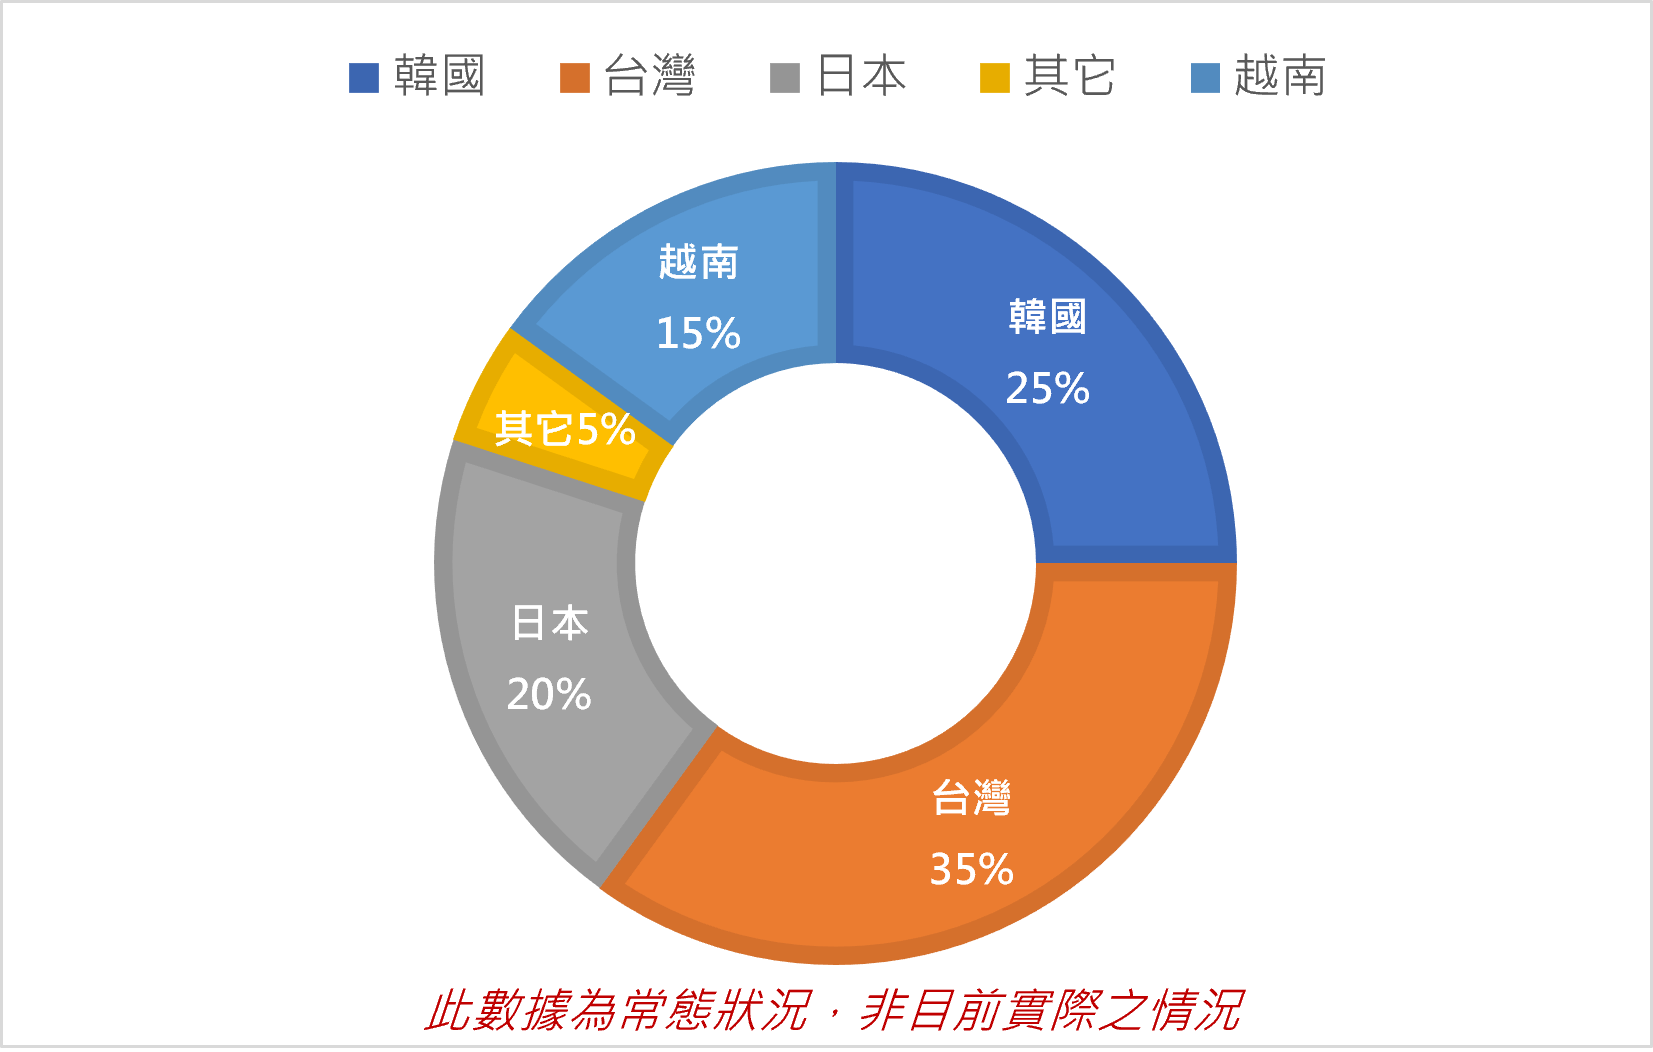 CG SPARTA校區學生國籍比例為:韓國25%,台灣25%,日本20%,其它國家5%，越南15%,但此數據統計為常態狀況，非目前實際之數據